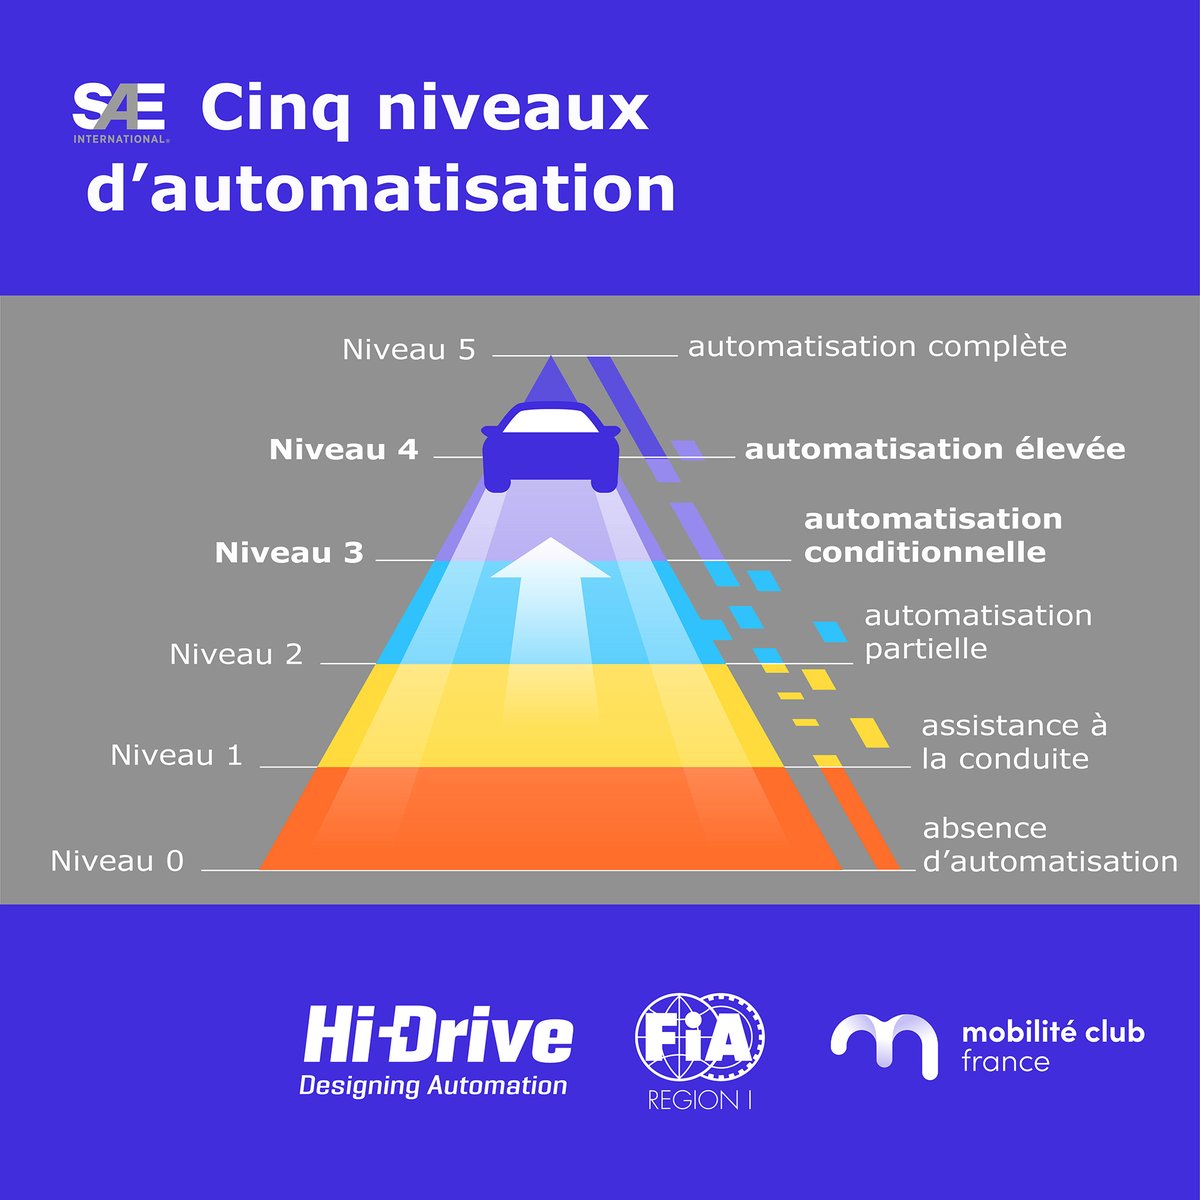 🚗 Les six niveaux d'automatisation de la conduite illustrent l'évolution et le développement des véhicules automatisés. Pour en savoir plus sur cette technologie, consultez le site : hi-drive.eu/concept/ @FIARegionI #HiDriveProject